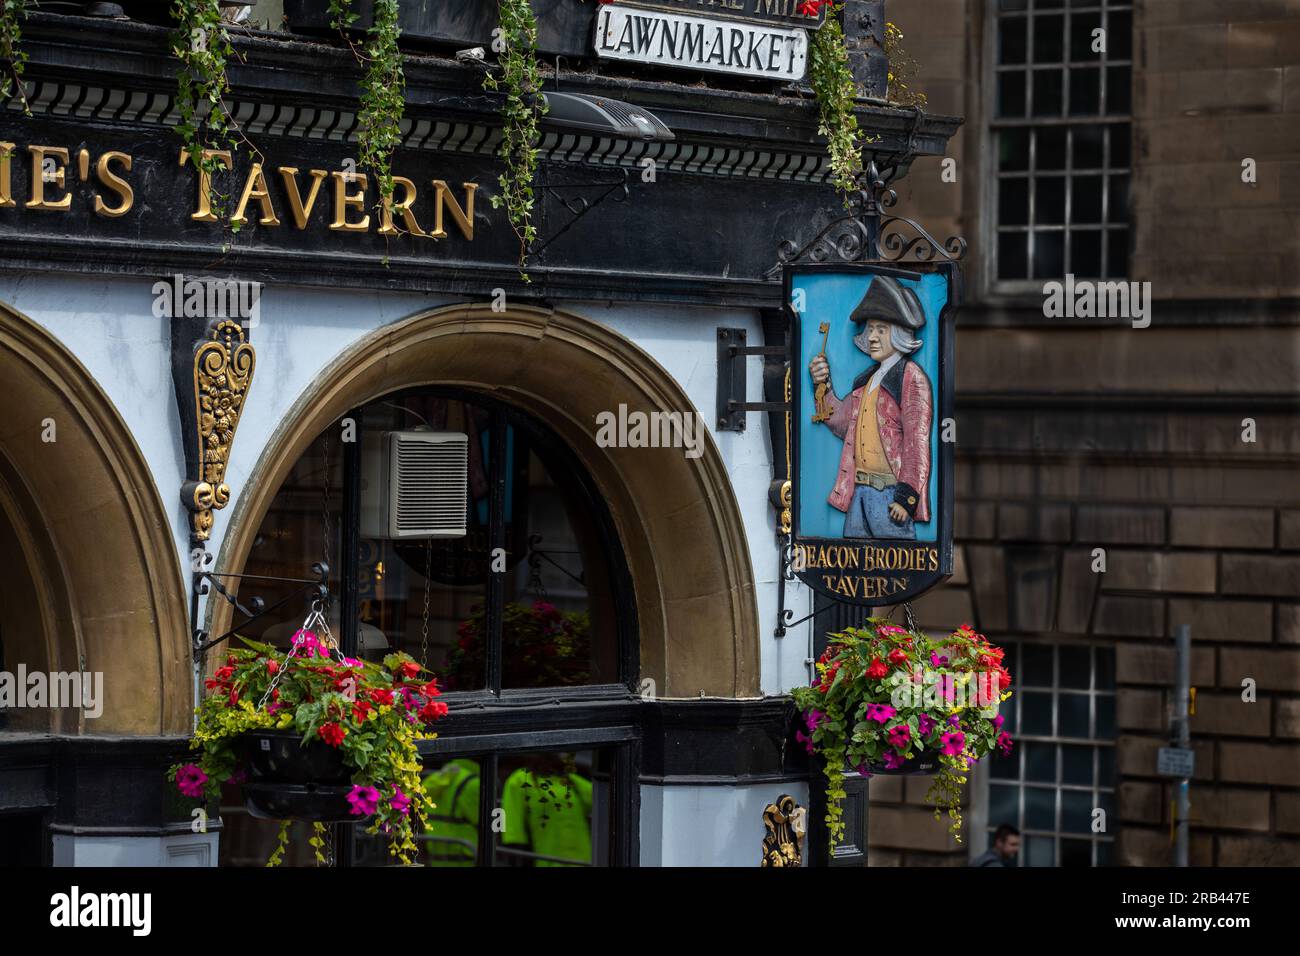 L'insegna del pub per Deacon Brodie's Tavern on the Lawmarket, The Royal Mile, Edimburgo Foto Stock